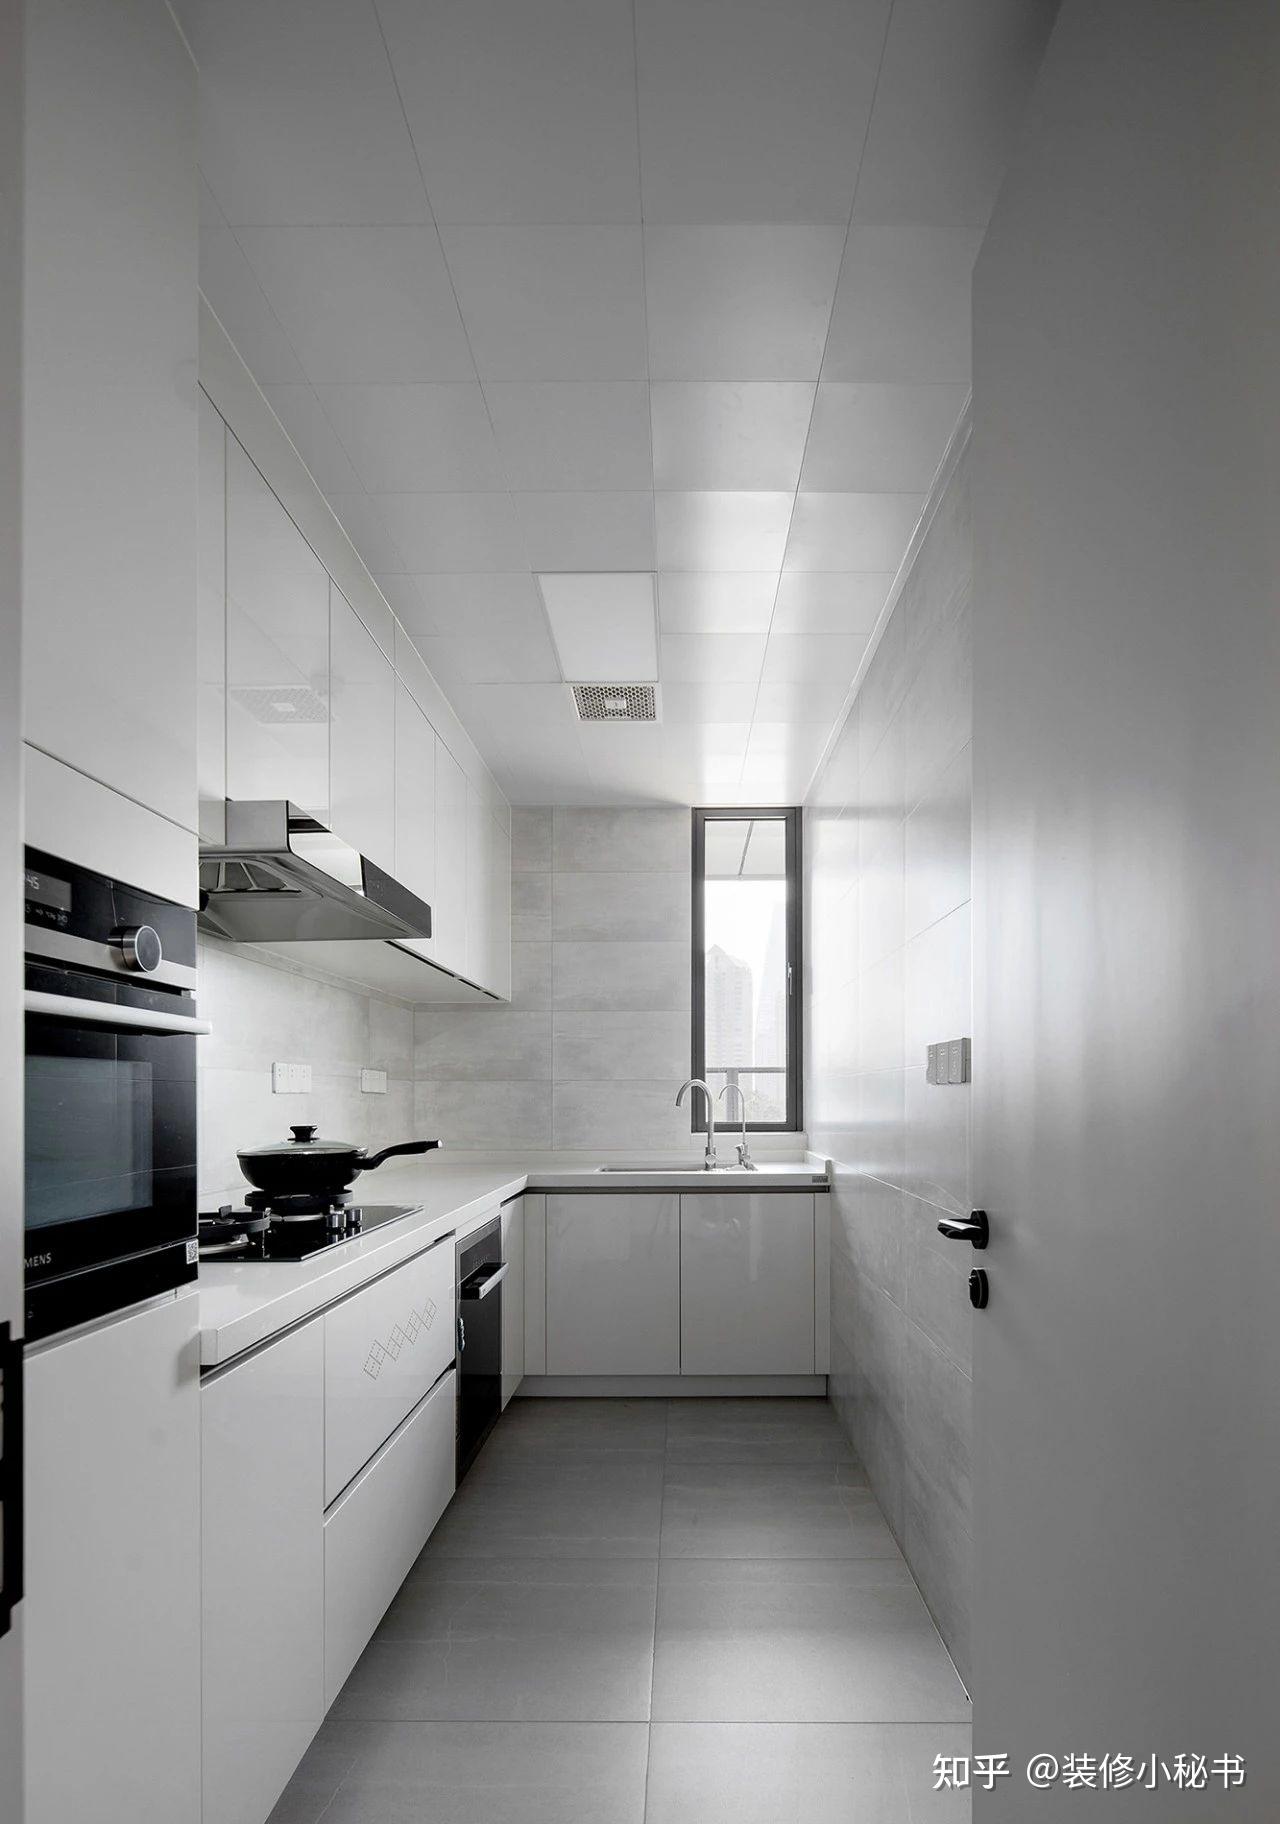 厨房主要是注重干净,整洁,卫生,所以在设计时选用了大量的浅灰色地砖